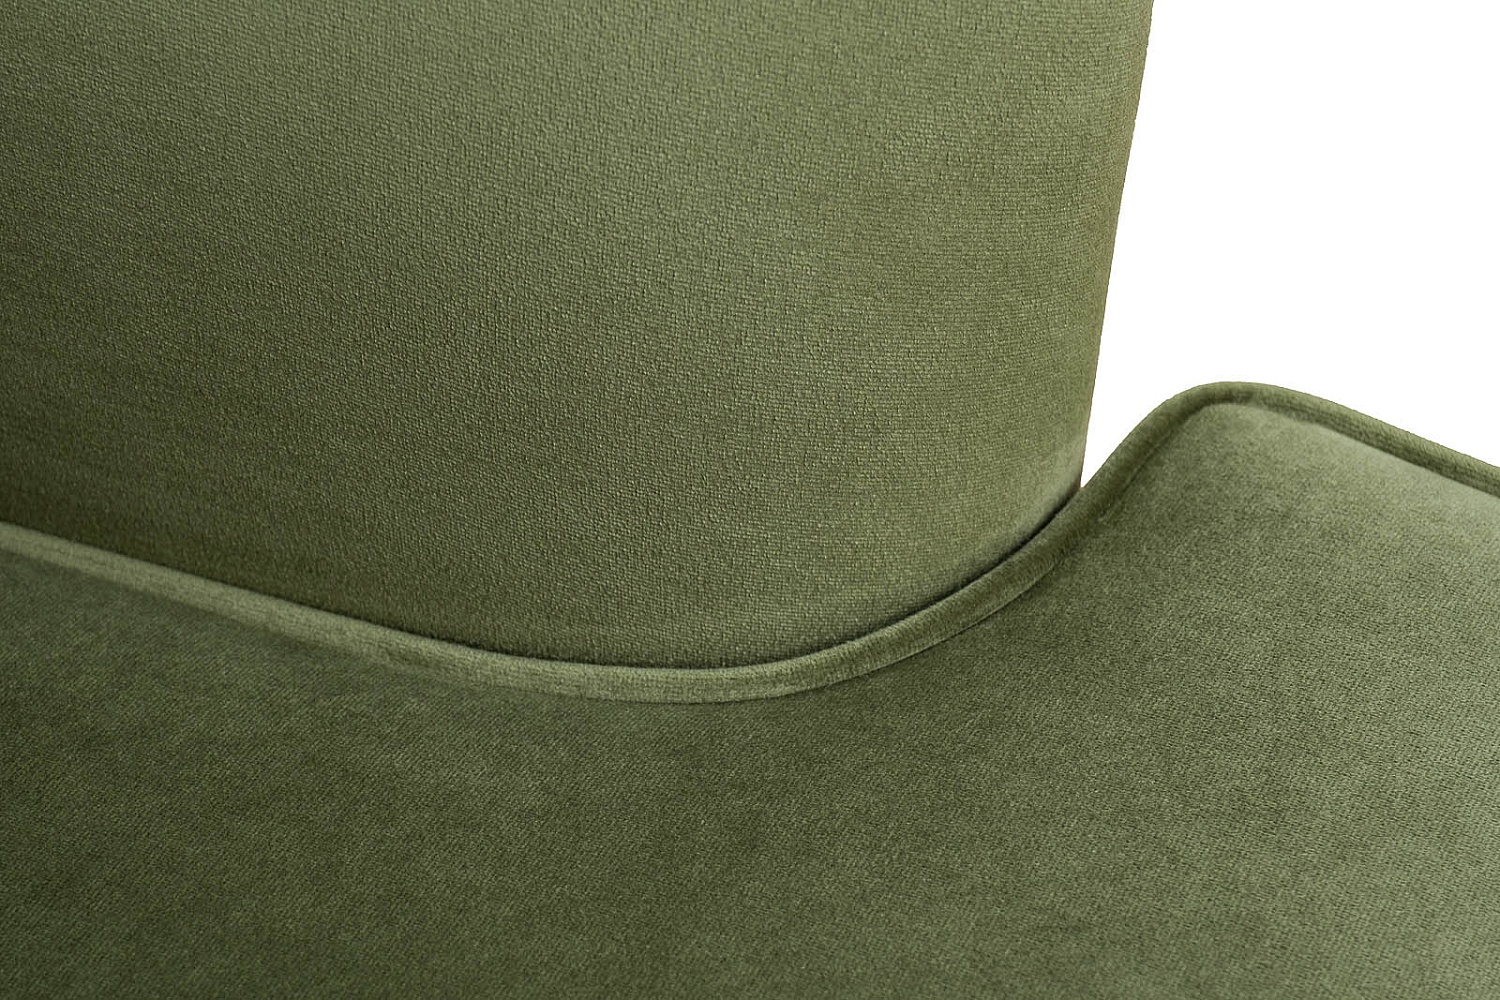 Кресло Rimini велюр зеленый Colton 008-ZEL 74*84*104см с подушкой